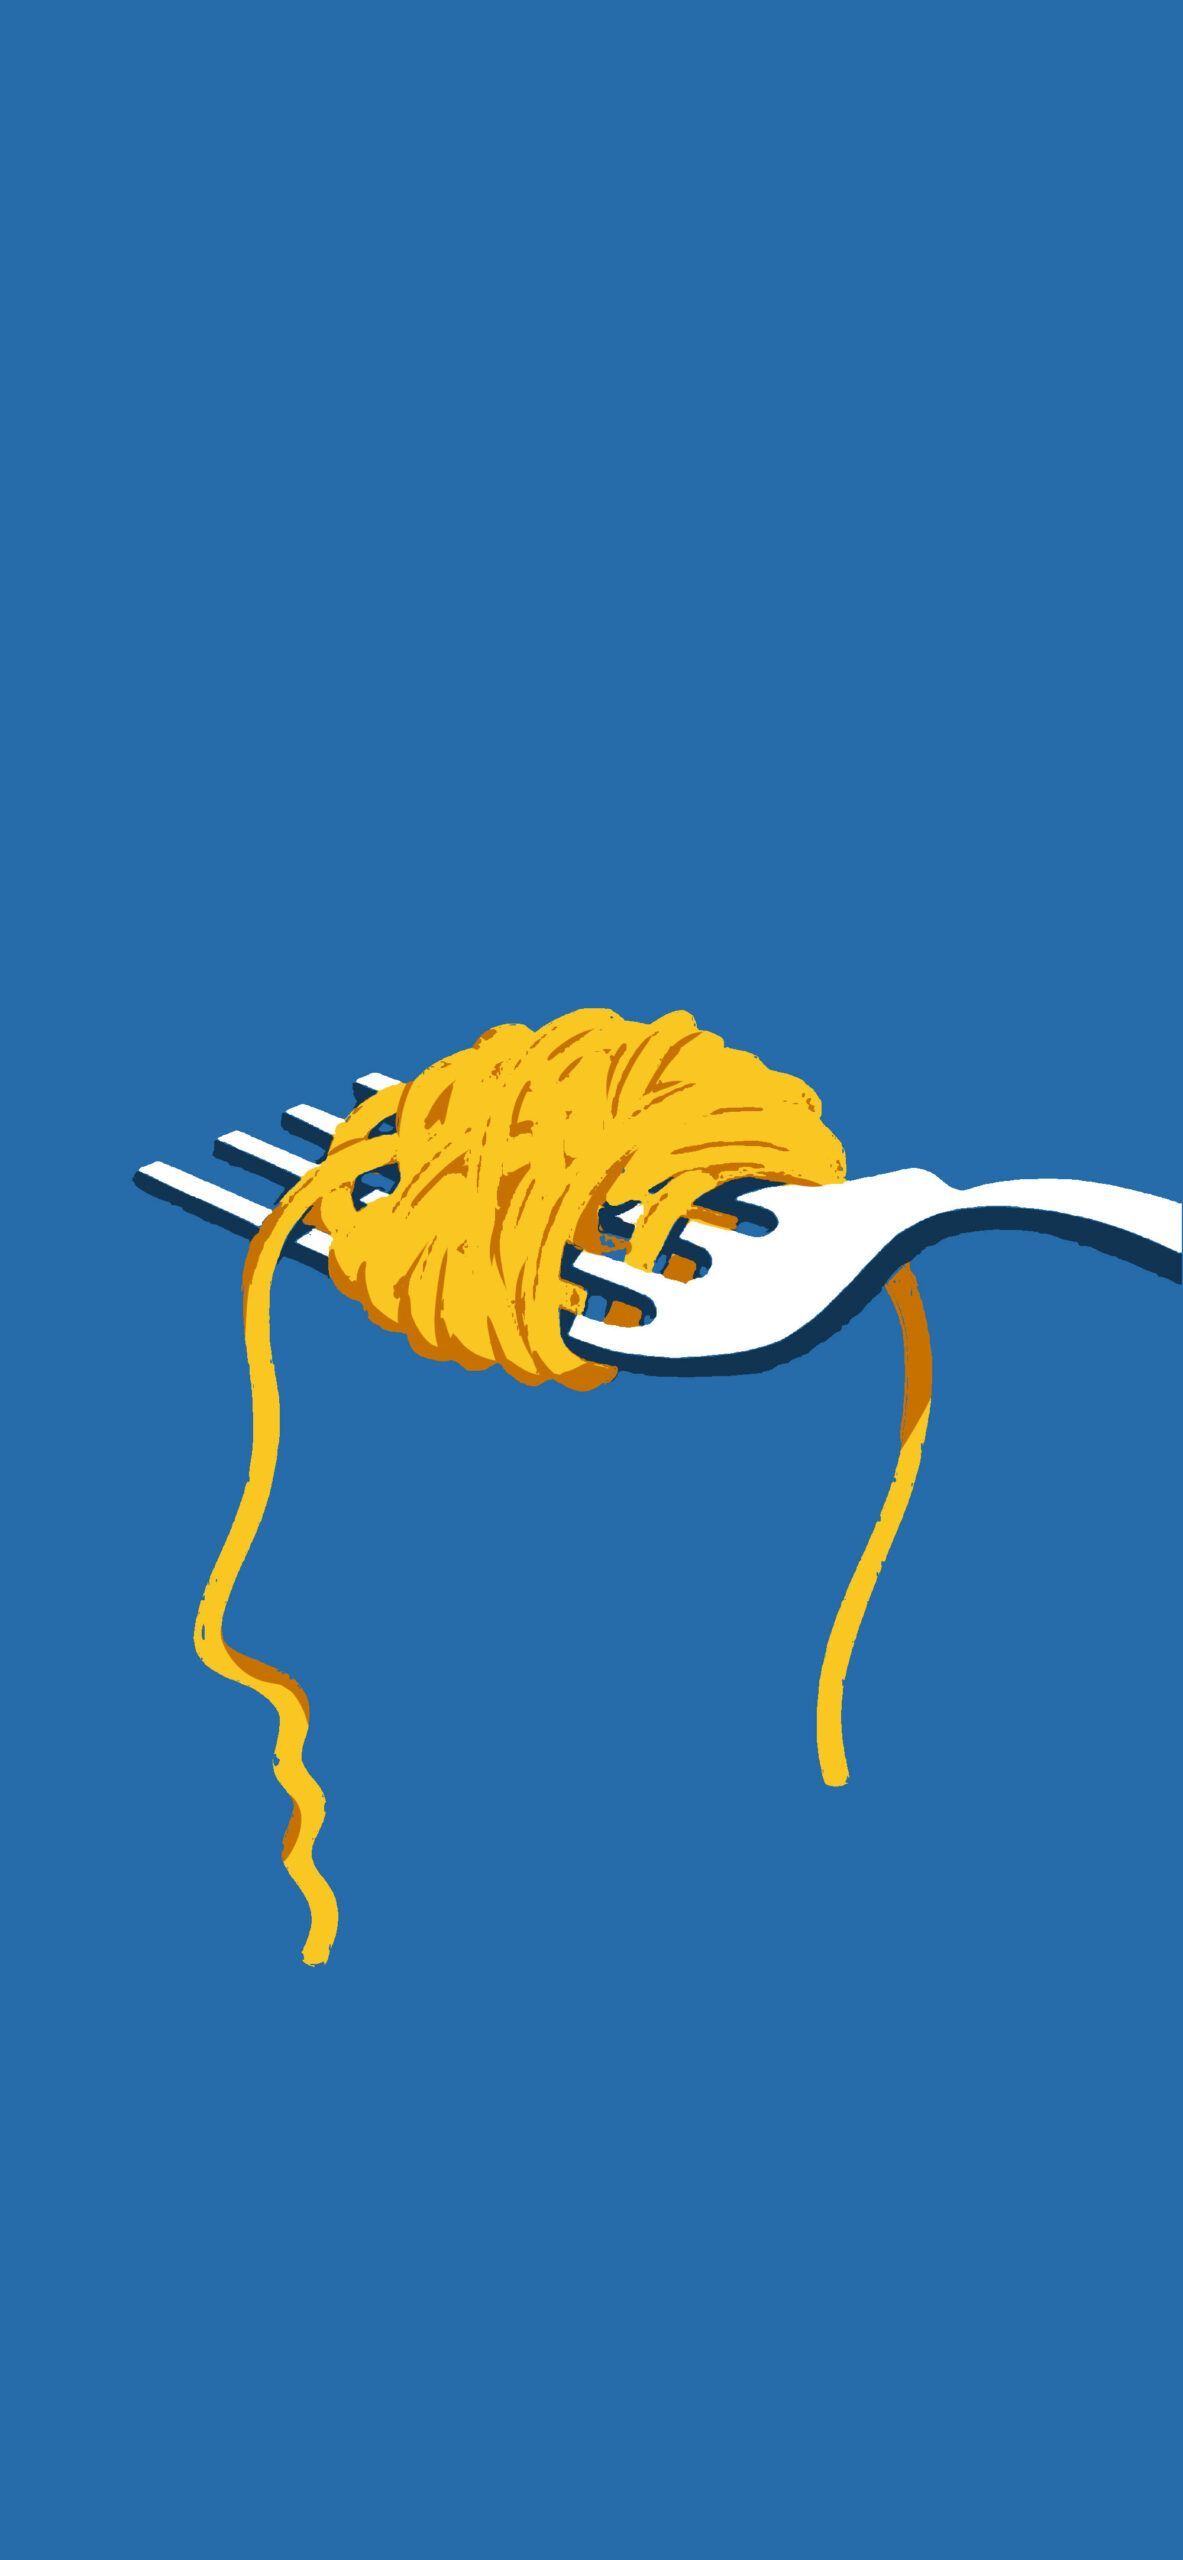 Pasta on a Fork Blue Aesthetic Wallpaper Art Wallpaper for Phone